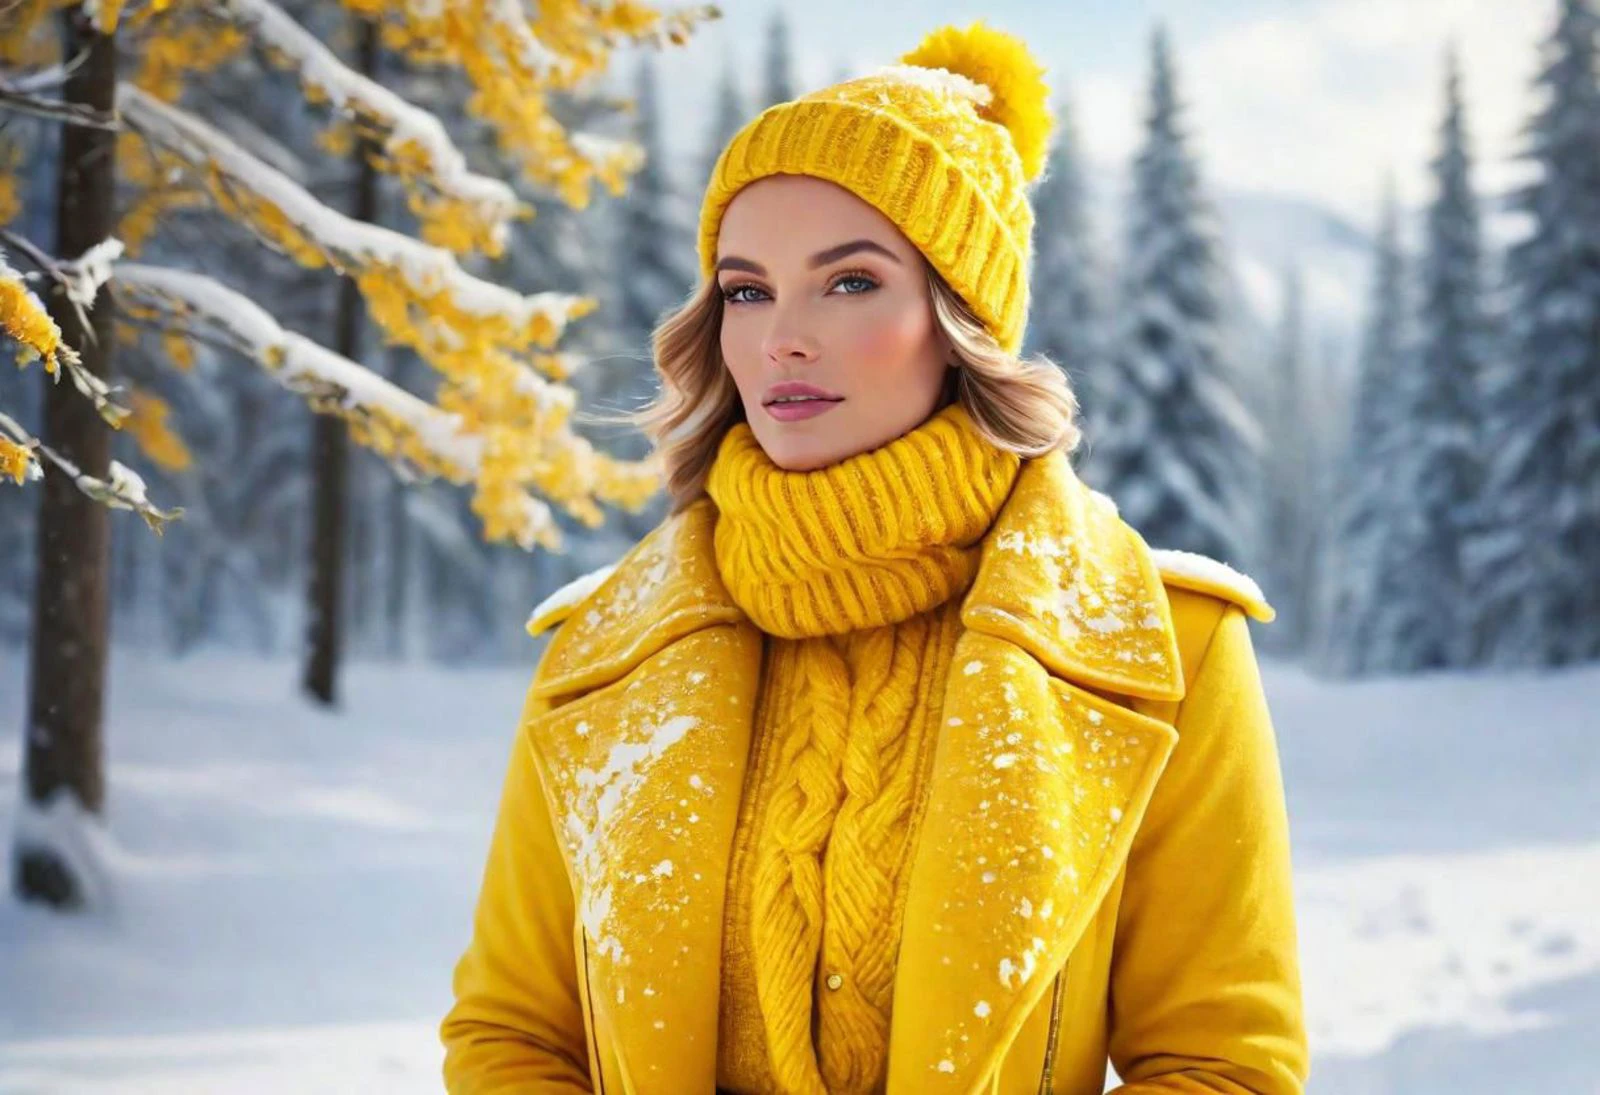 "鮮やかな黄色を着た美しい女性を描いた画像を作成します, イエローチームの冬のエッセンスを体現. 冬の装いで優雅に着飾った彼女の姿を思い浮かべてください, 雪景色と氷のアクセントに囲まれた. 季節の美しさを照らし、冬を背景にイエローチームの活気ある精神を披露します."